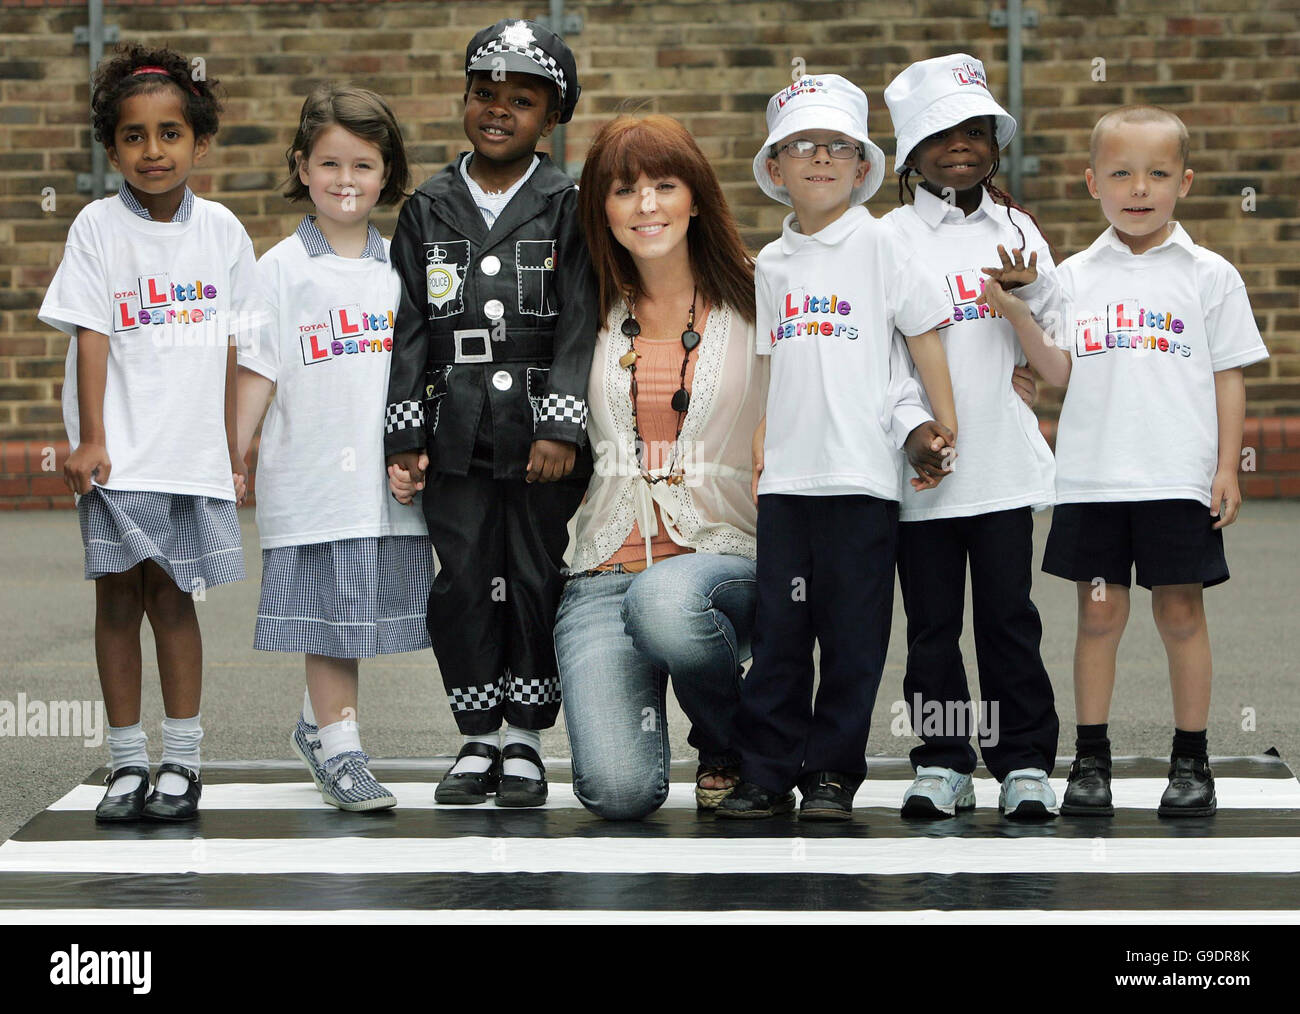 L'ex cantante ATOMICA Kitten Natasha Hamilton lancia LA campagna TOTAL Little Learners Road Safety con gli alunni alla St Matthews Church of England School di Westminster, nel centro di Londra. Foto Stock